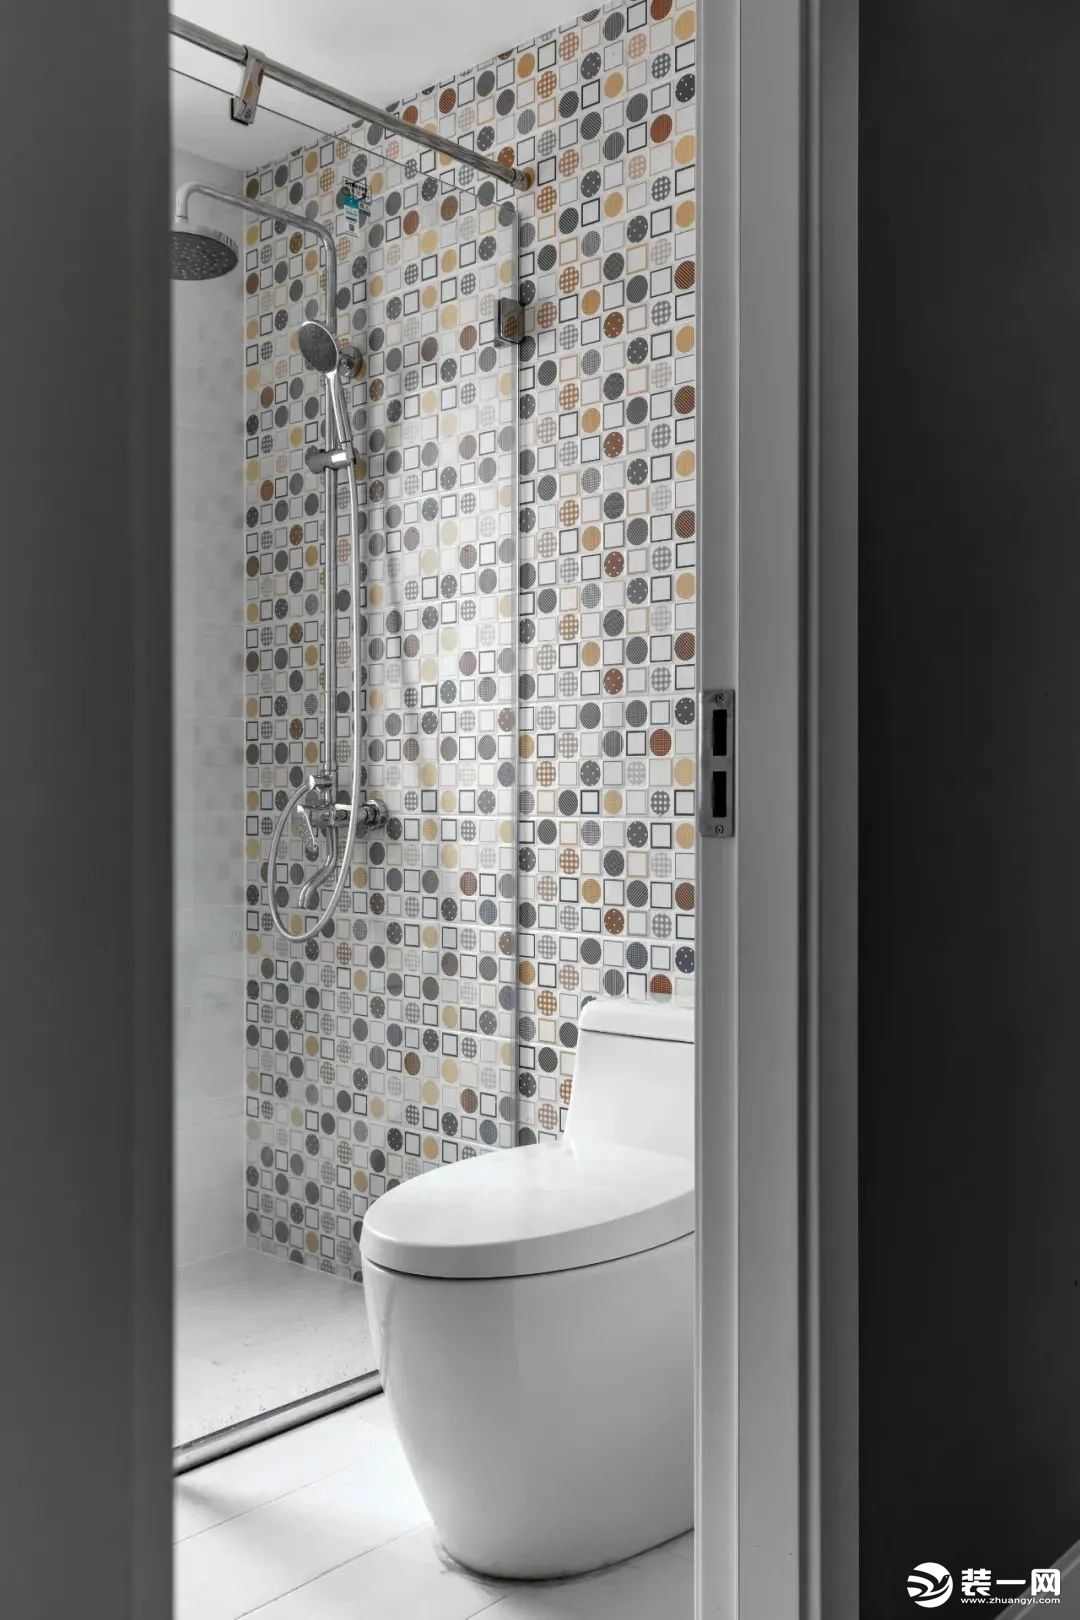 主卫的淋浴花洒安装墙面贴着马赛克墙砖，与床头墙的墙布视觉相互呼应，带来一种文艺的简约感。